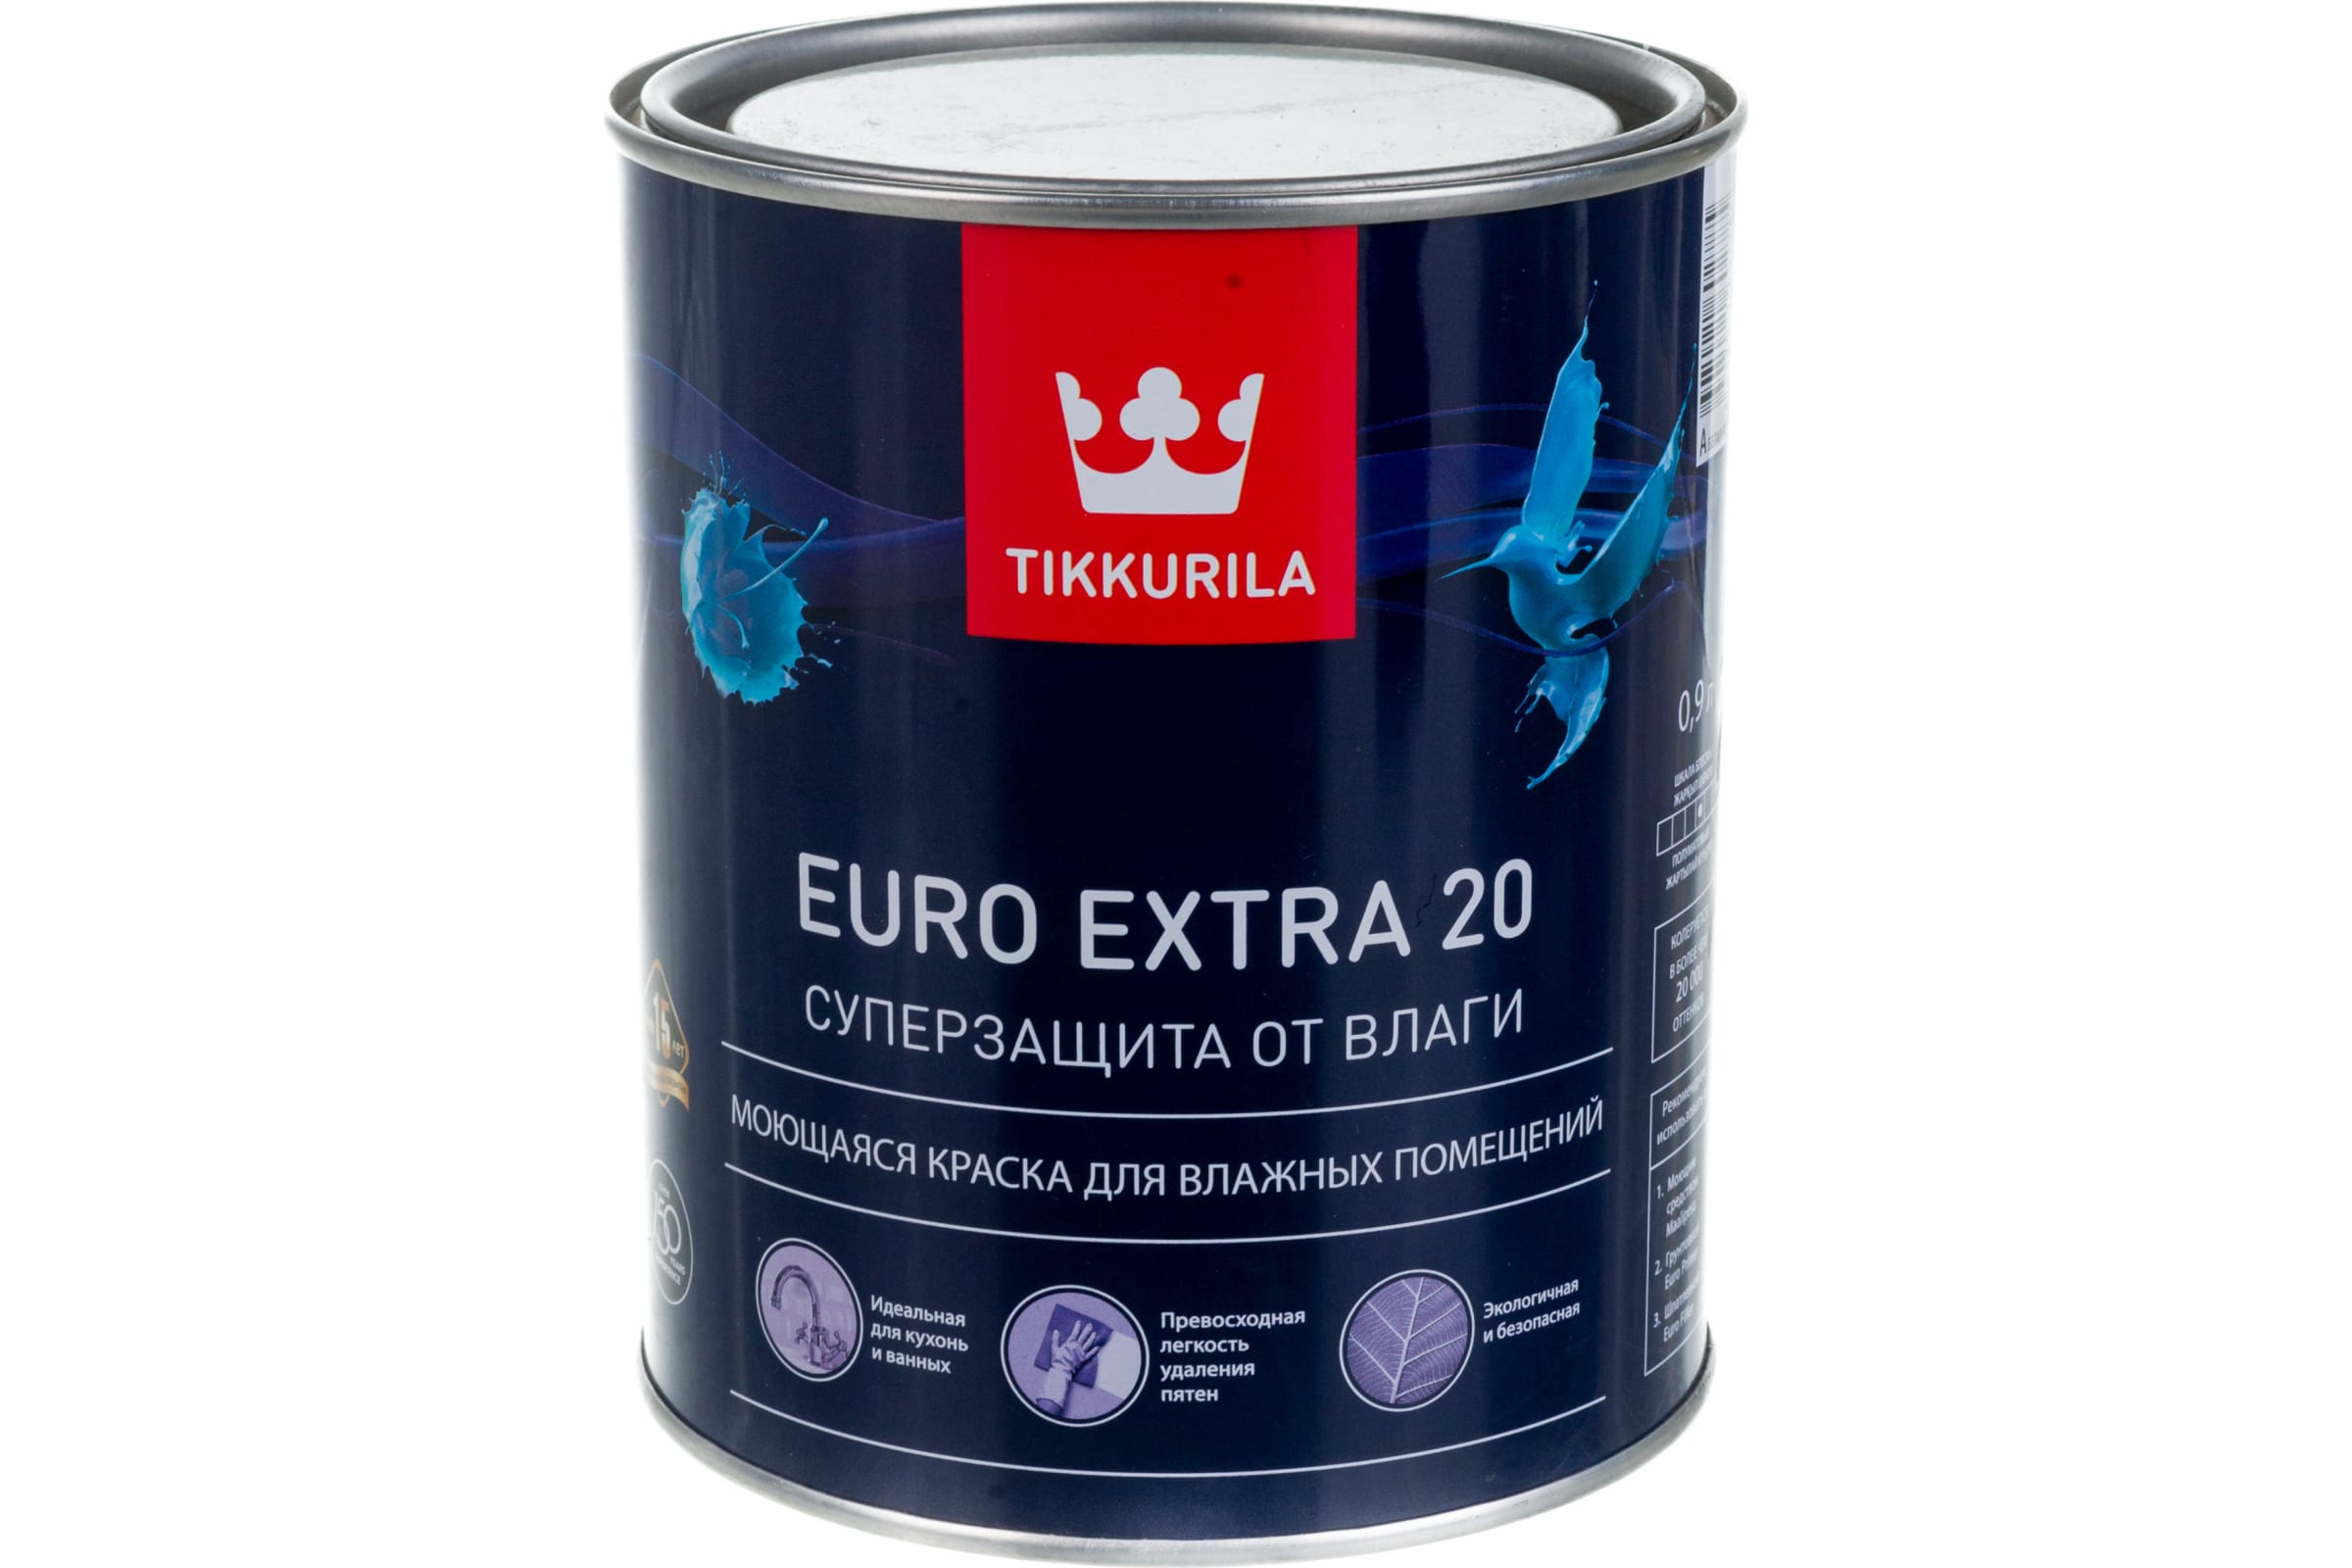 TIKKURILA EURO EXTRA 20 краска моющаяся для влажных помещений, база A 0,9 21350